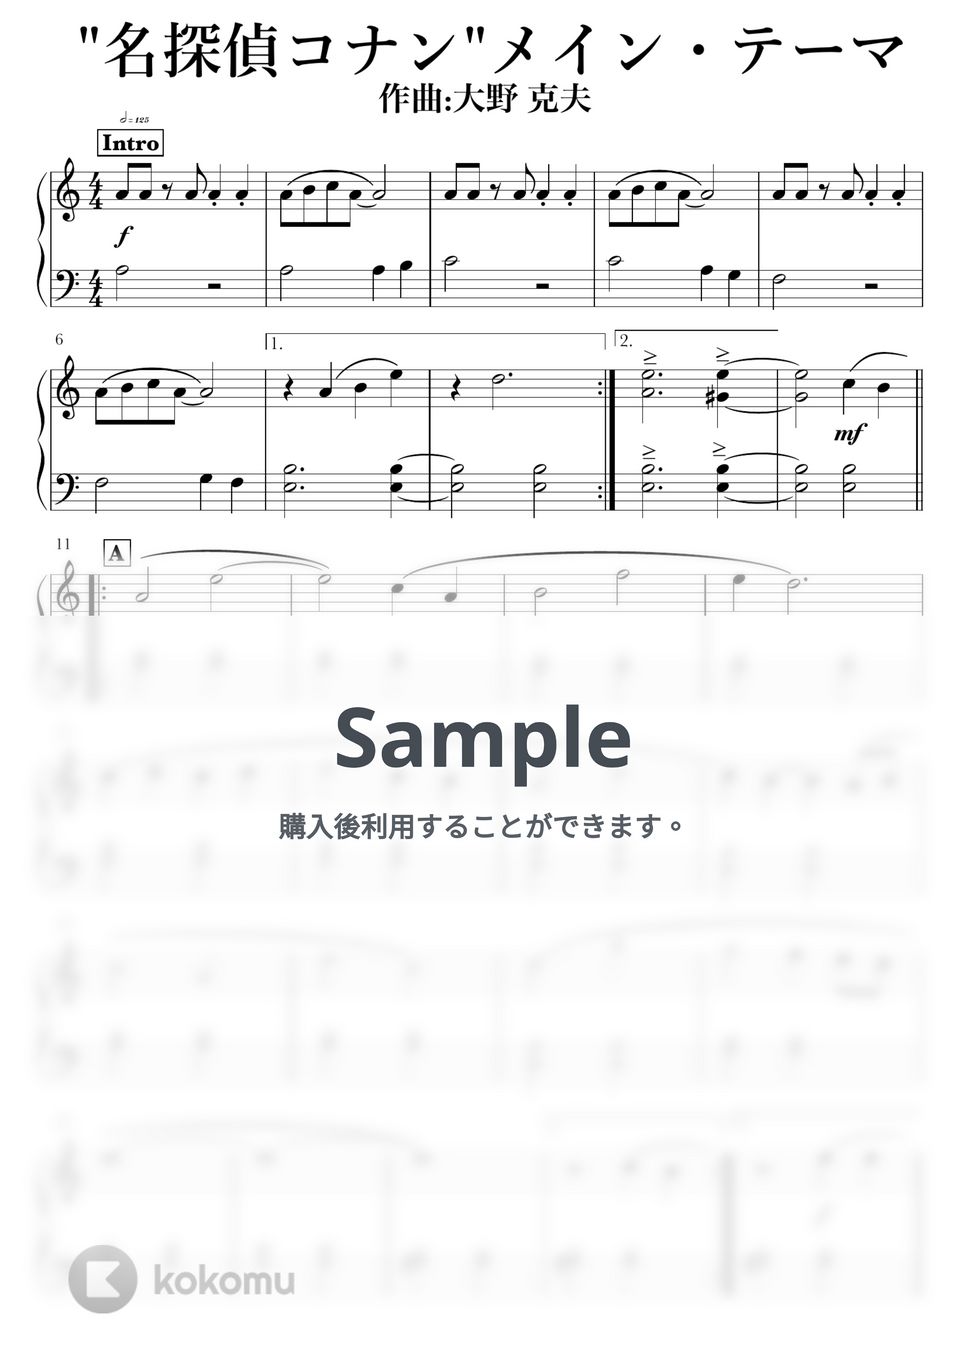 大野克夫 - 名探偵コナン メイン・テーマ by NOTES music